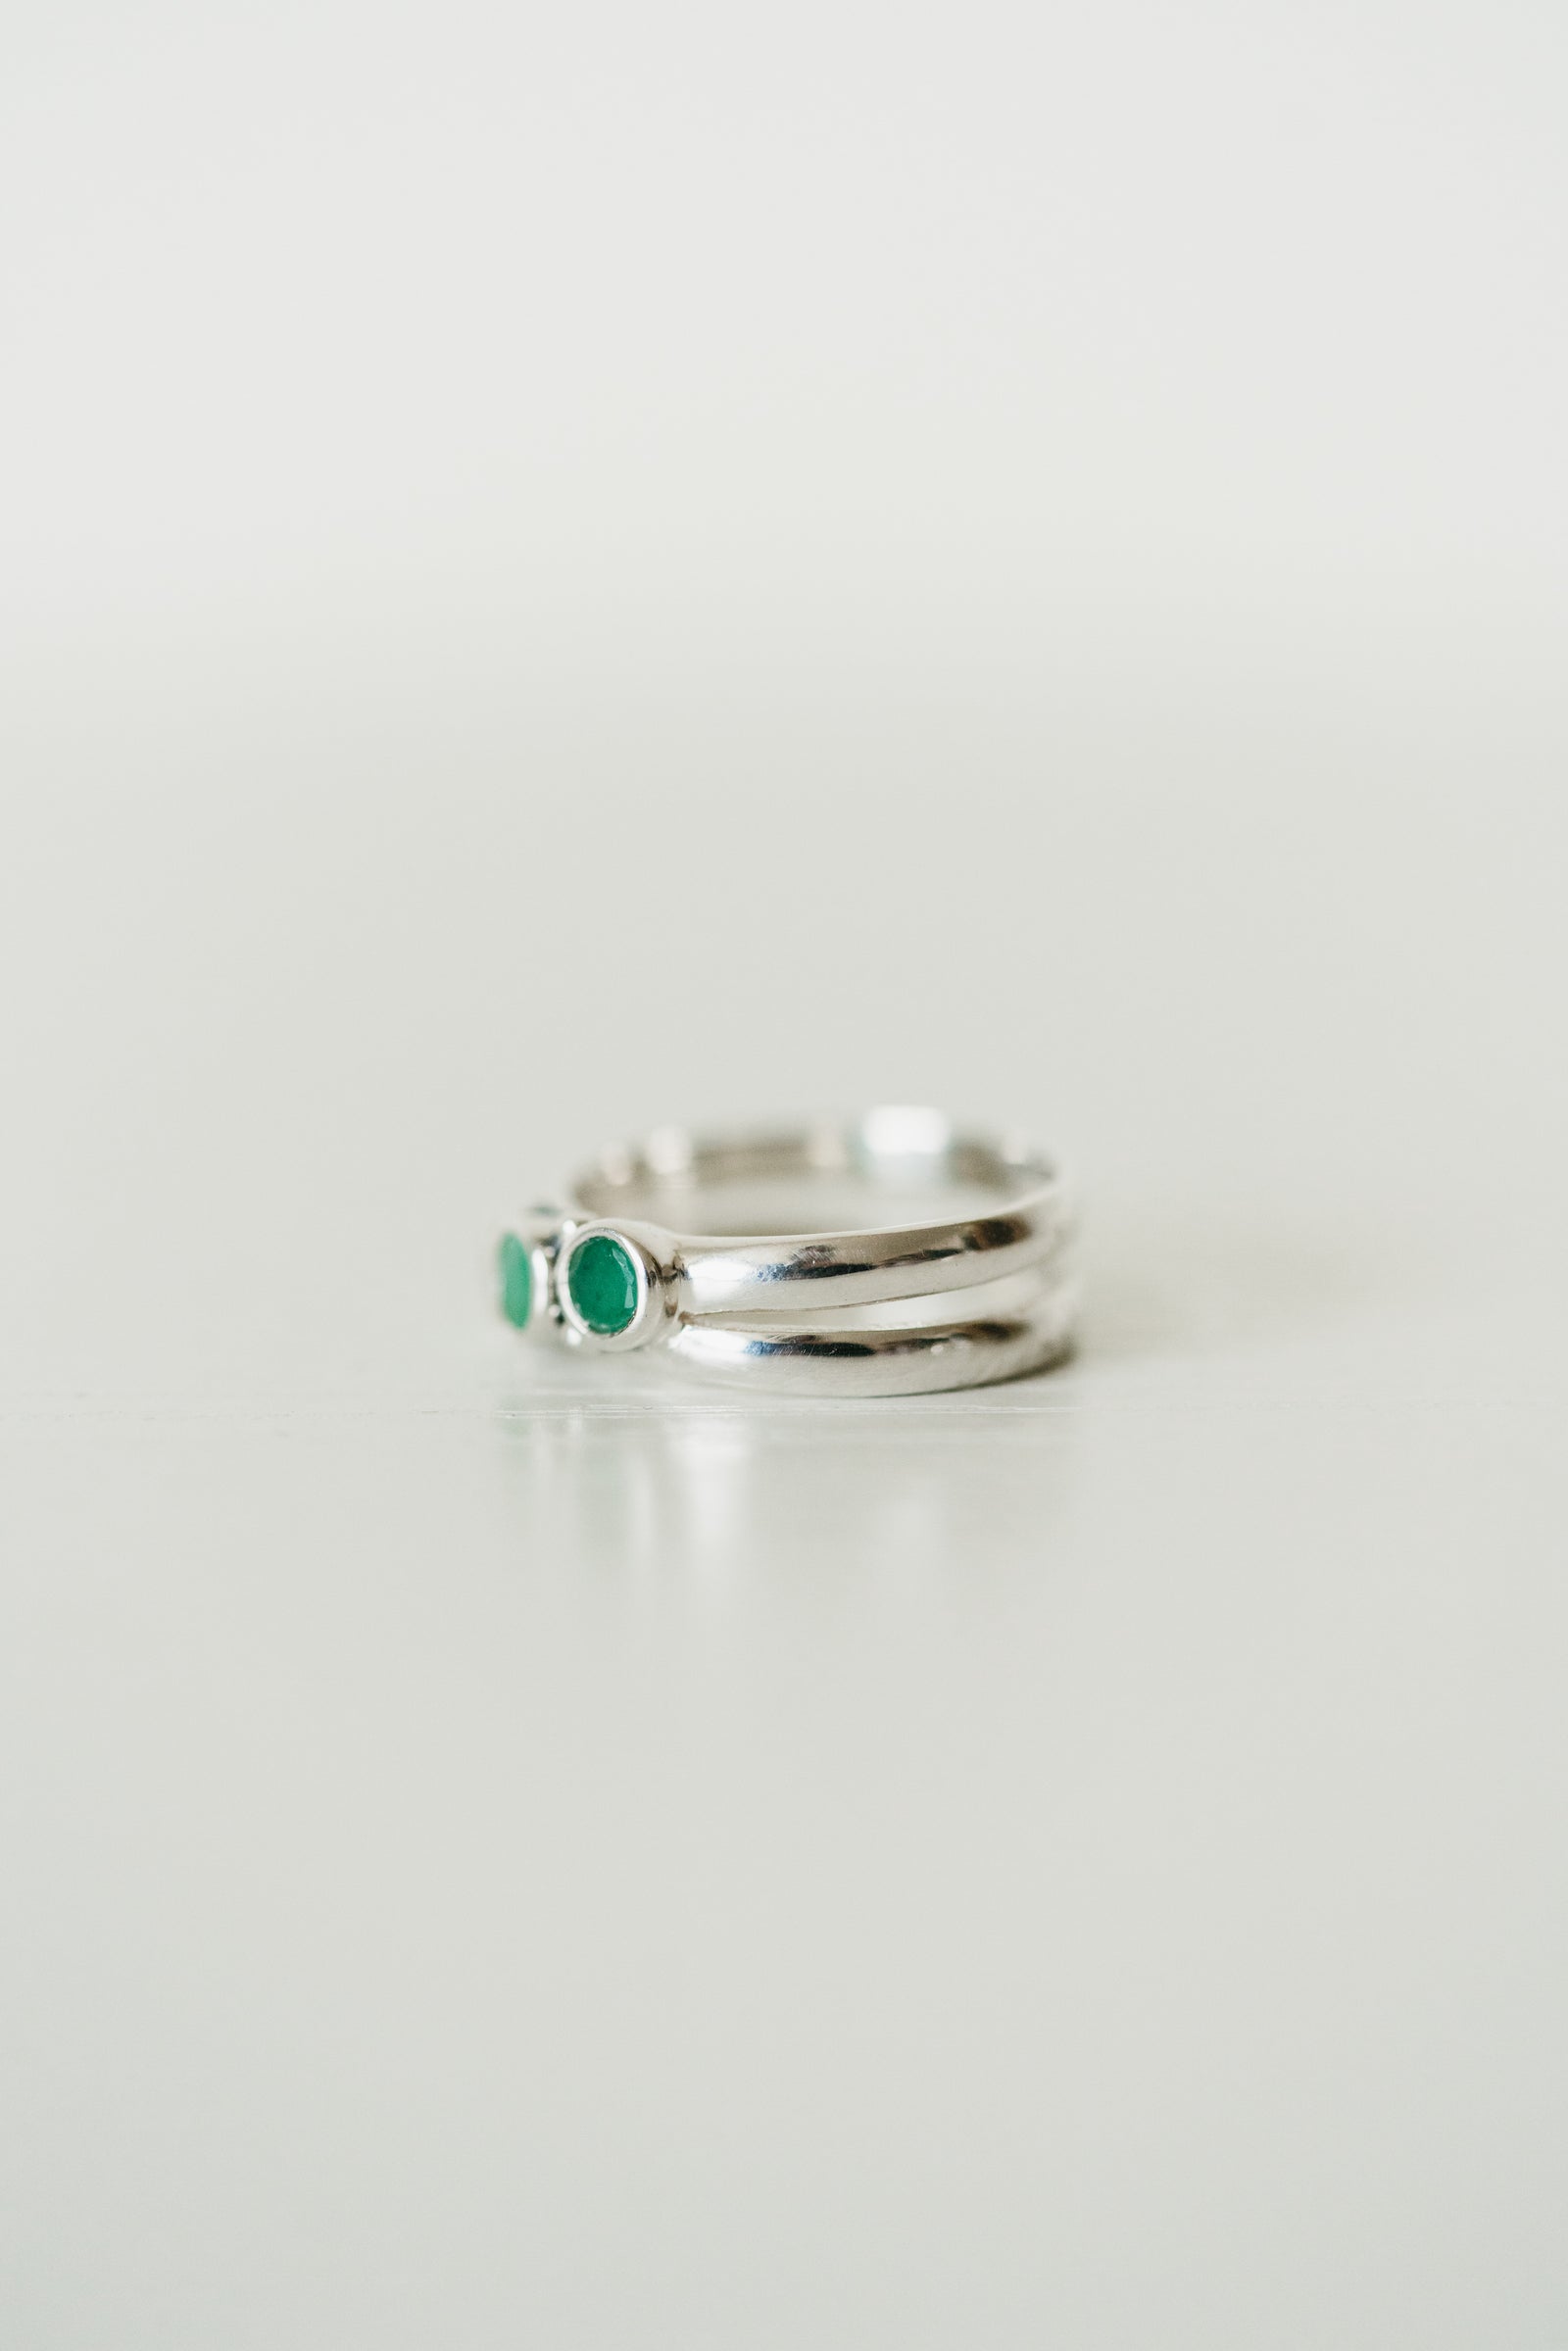 Zara Ring | Emerald